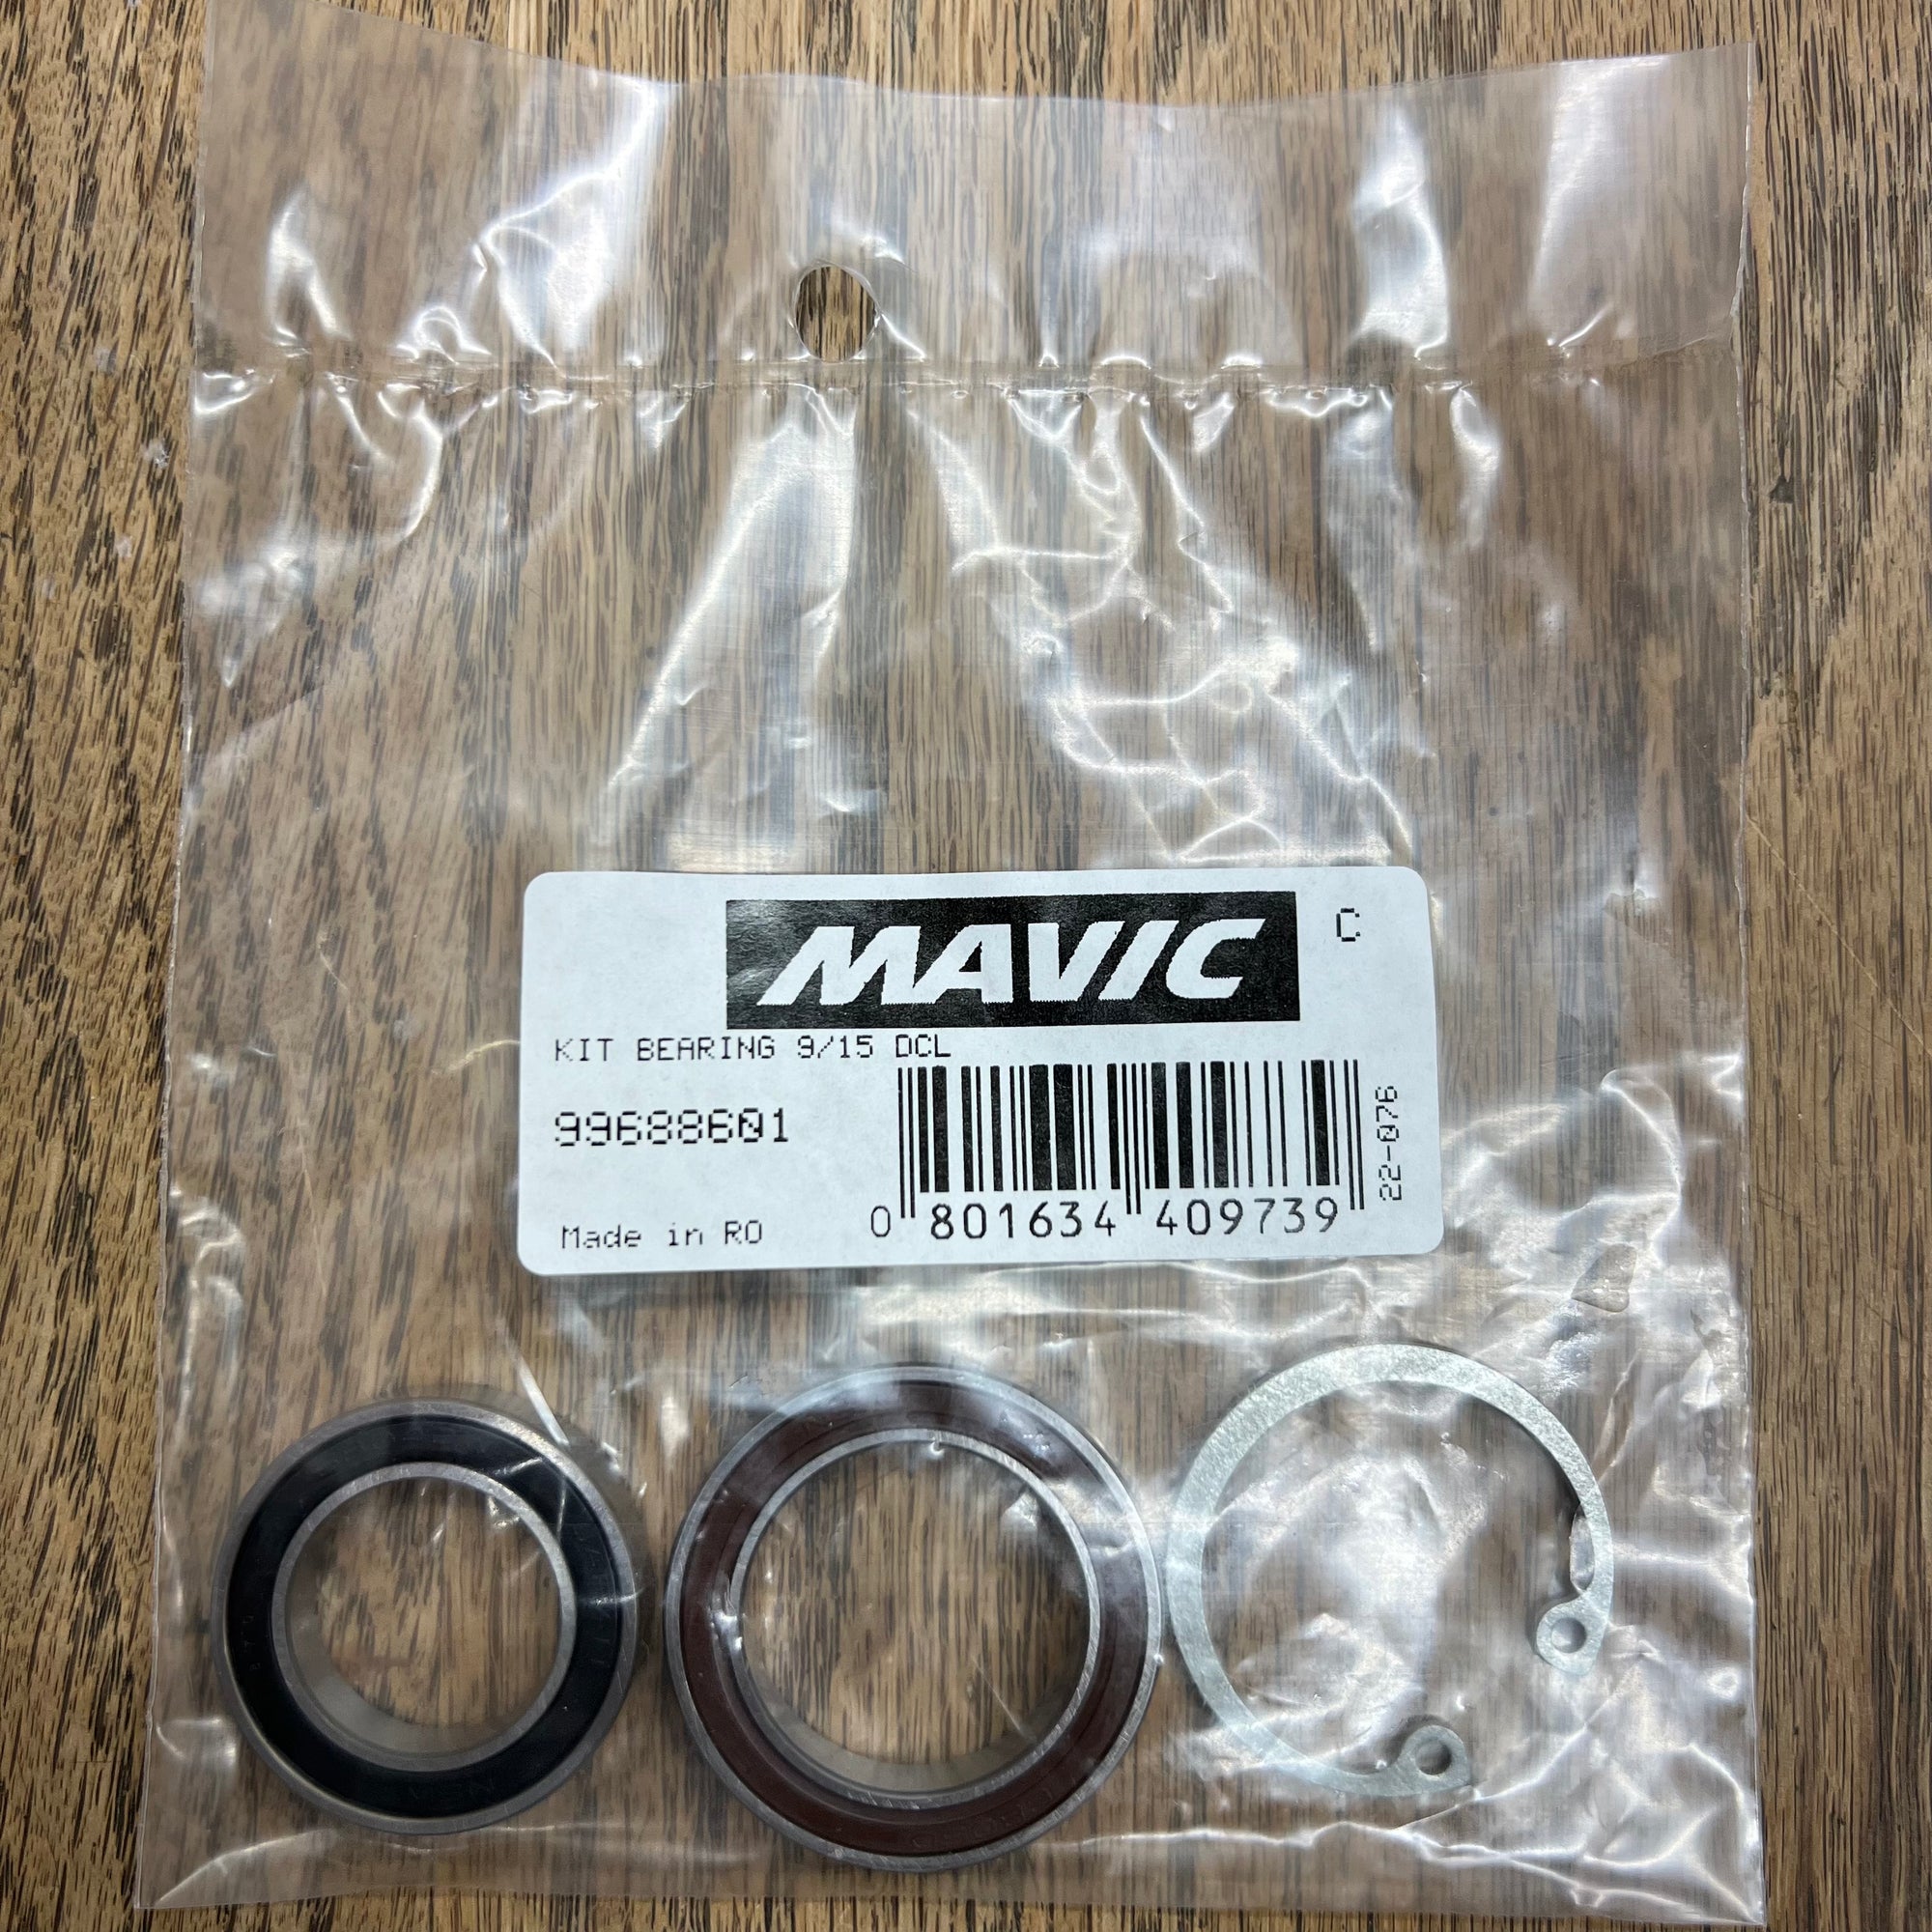 Mavic 99688601 Bearings